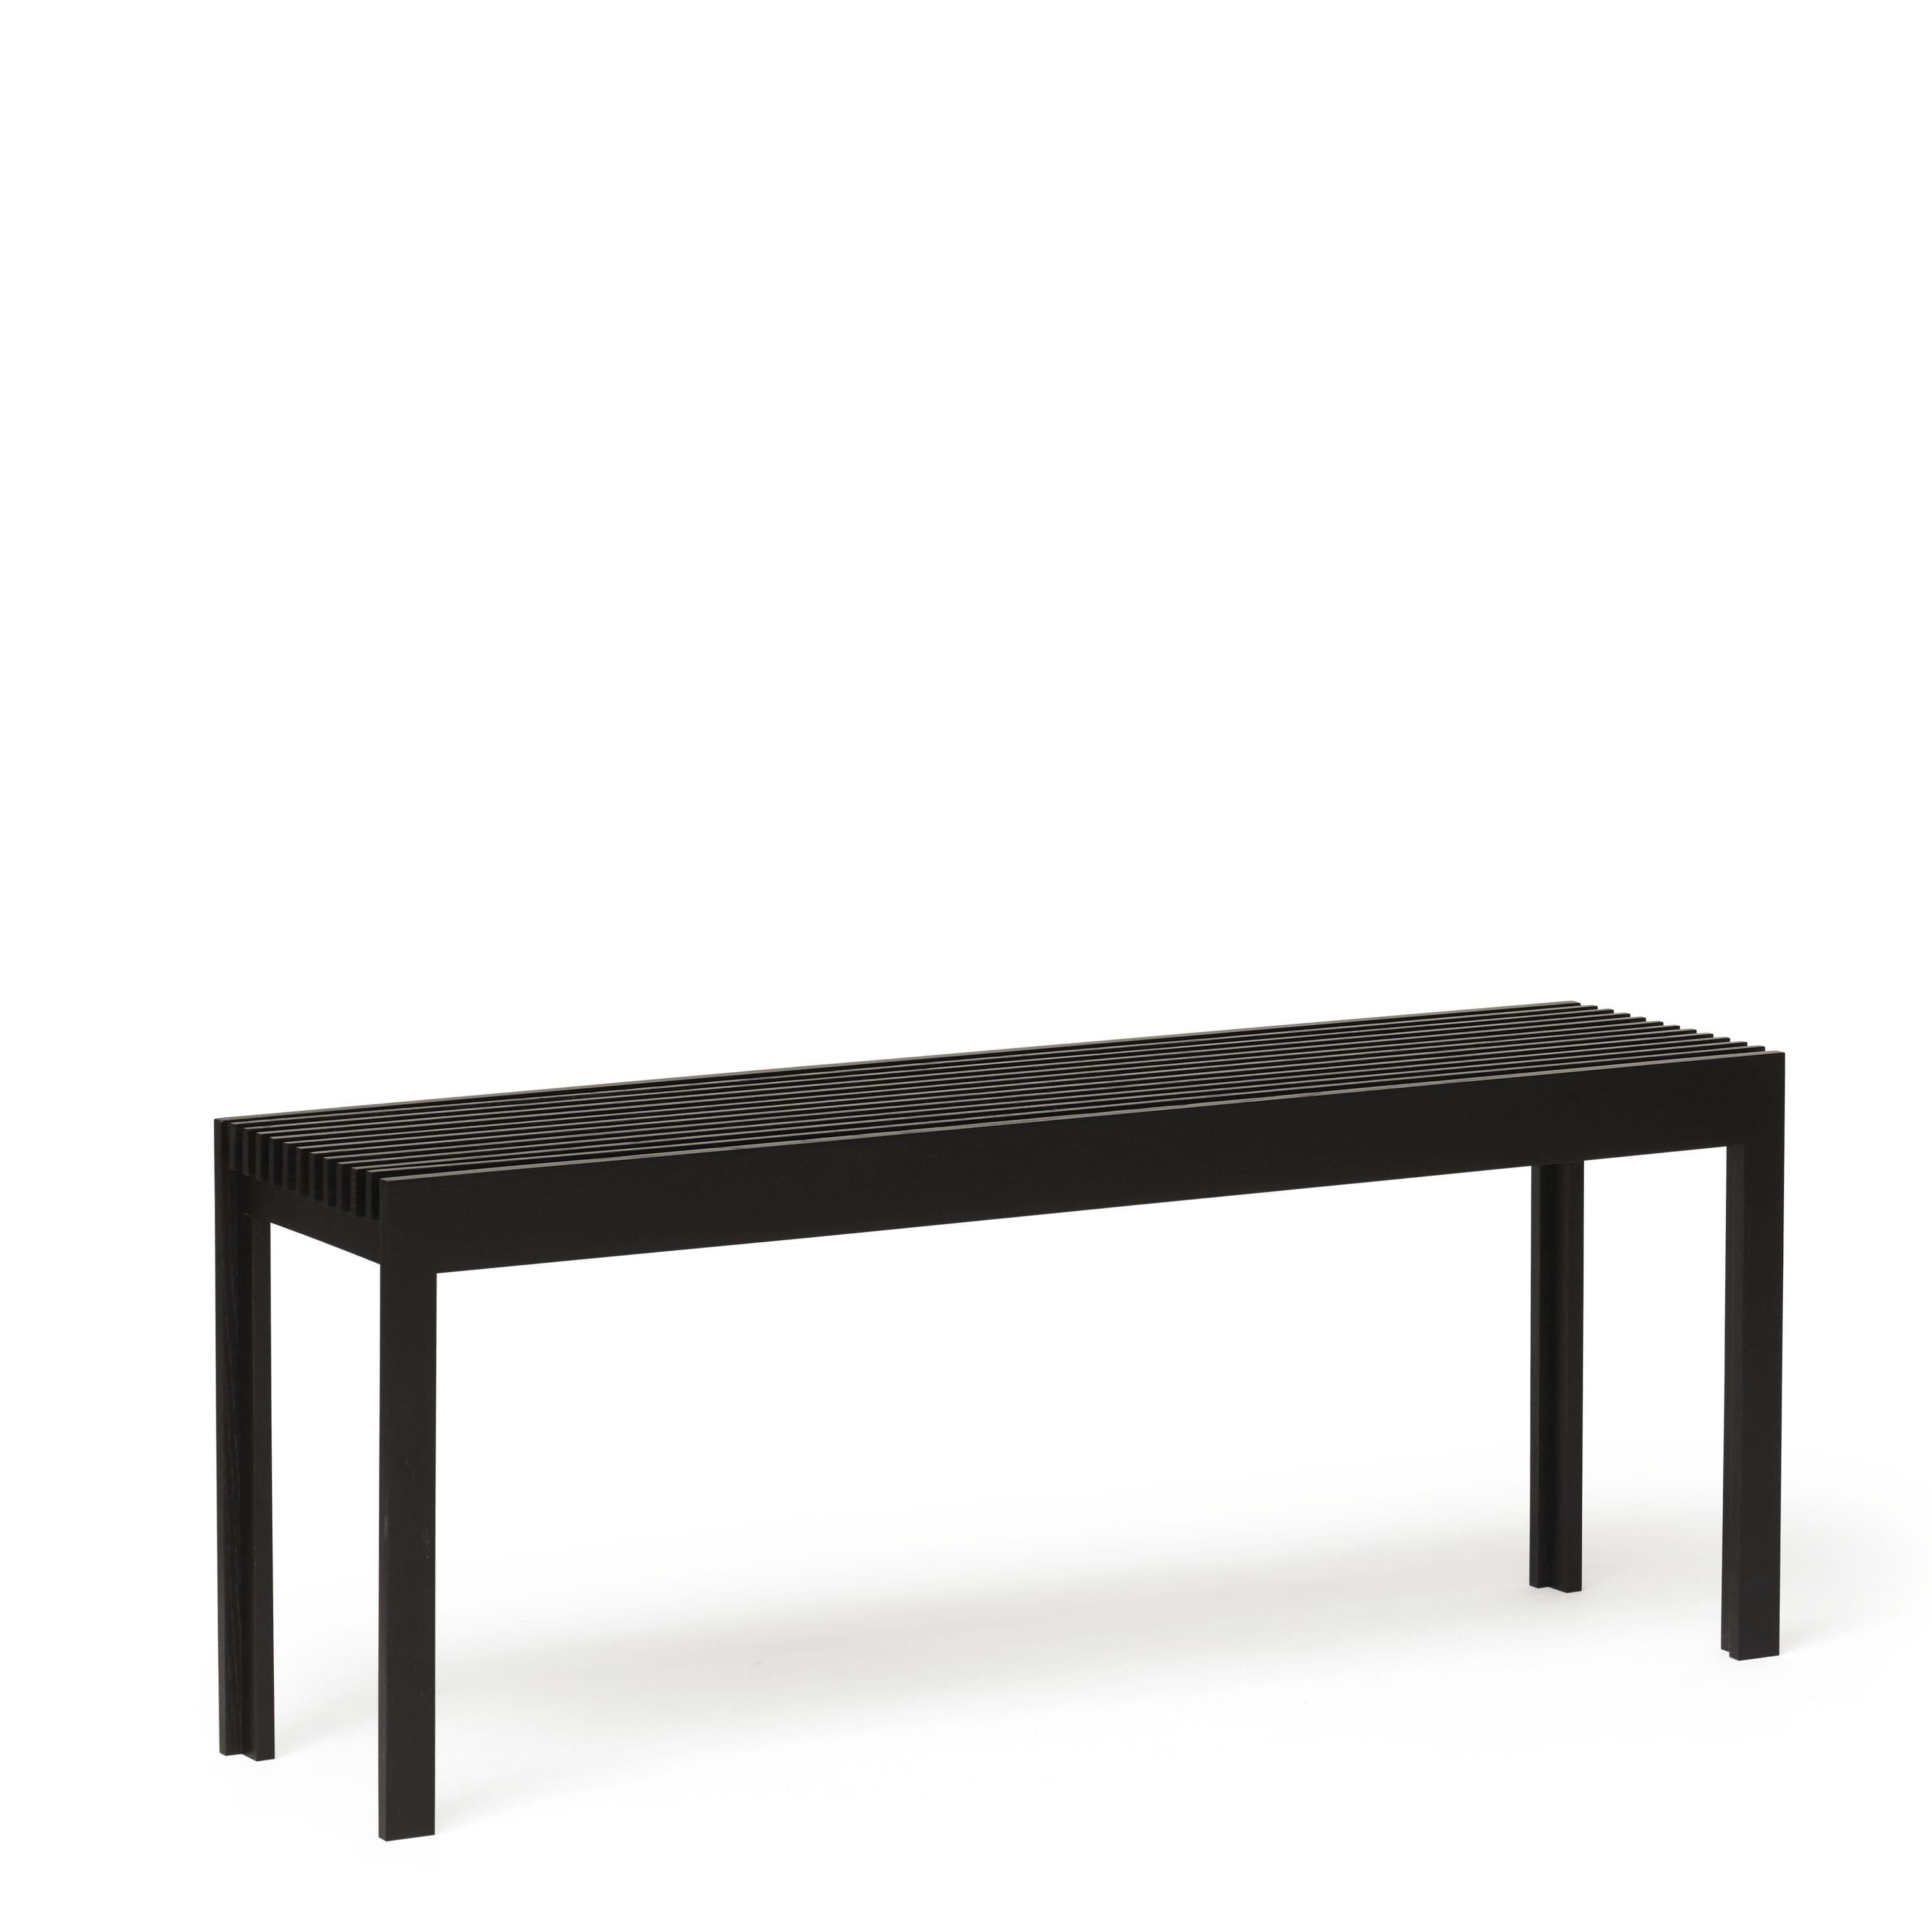 形式和完善轻便的长凳。黑色染色的橡木